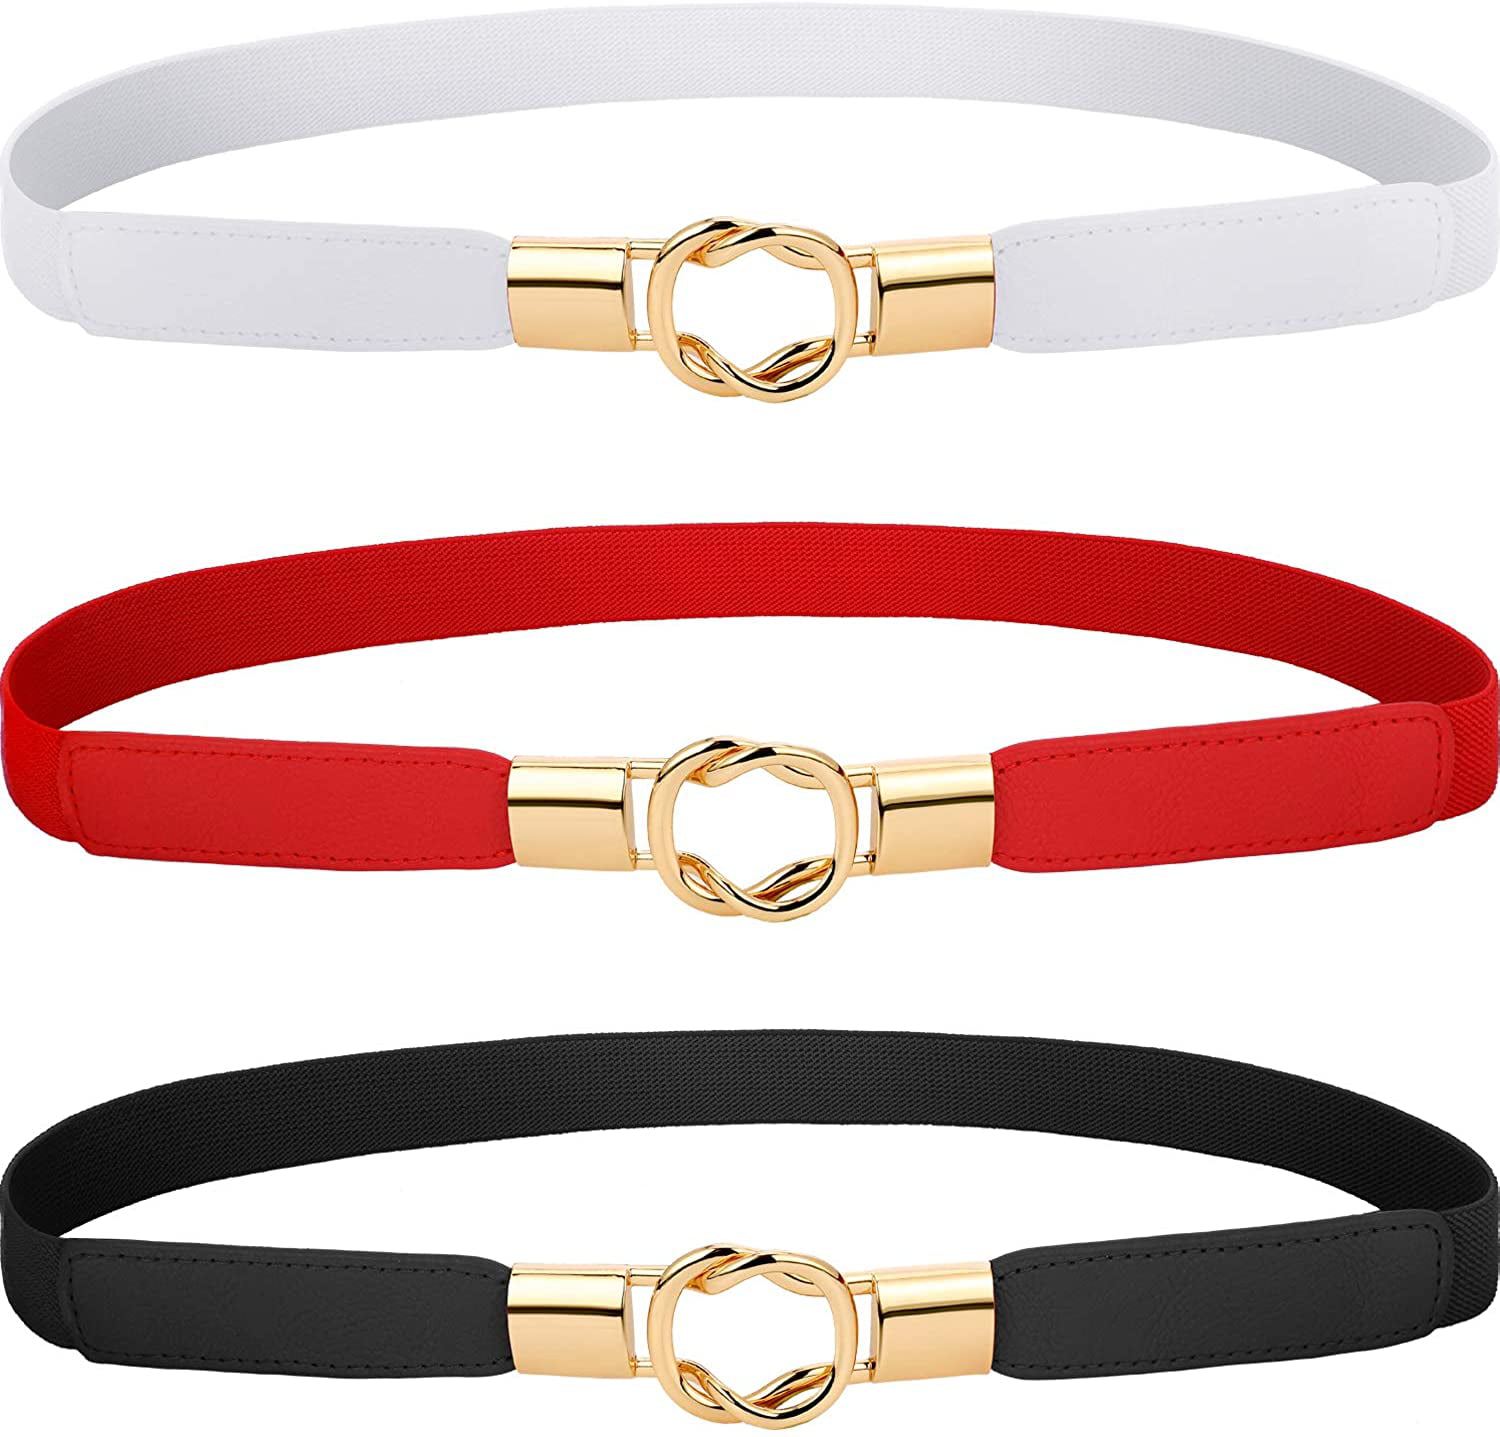 3 Pieces Women Skinny Waist Belt Elastic Thin Belt Waist Cinch Belt for Women Girls Accessories 